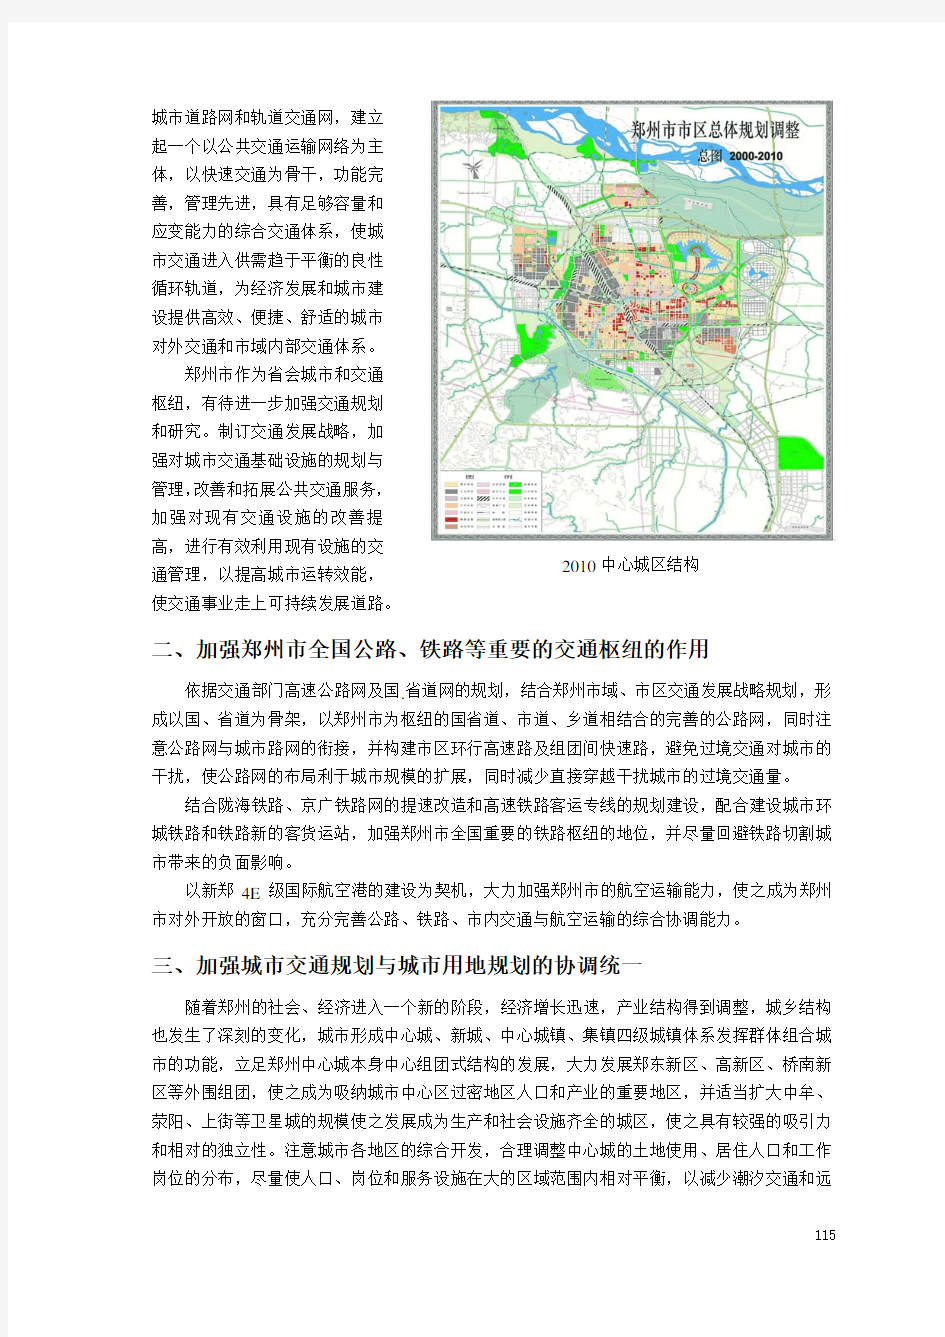 试论郑州市综合交通体系远景规划